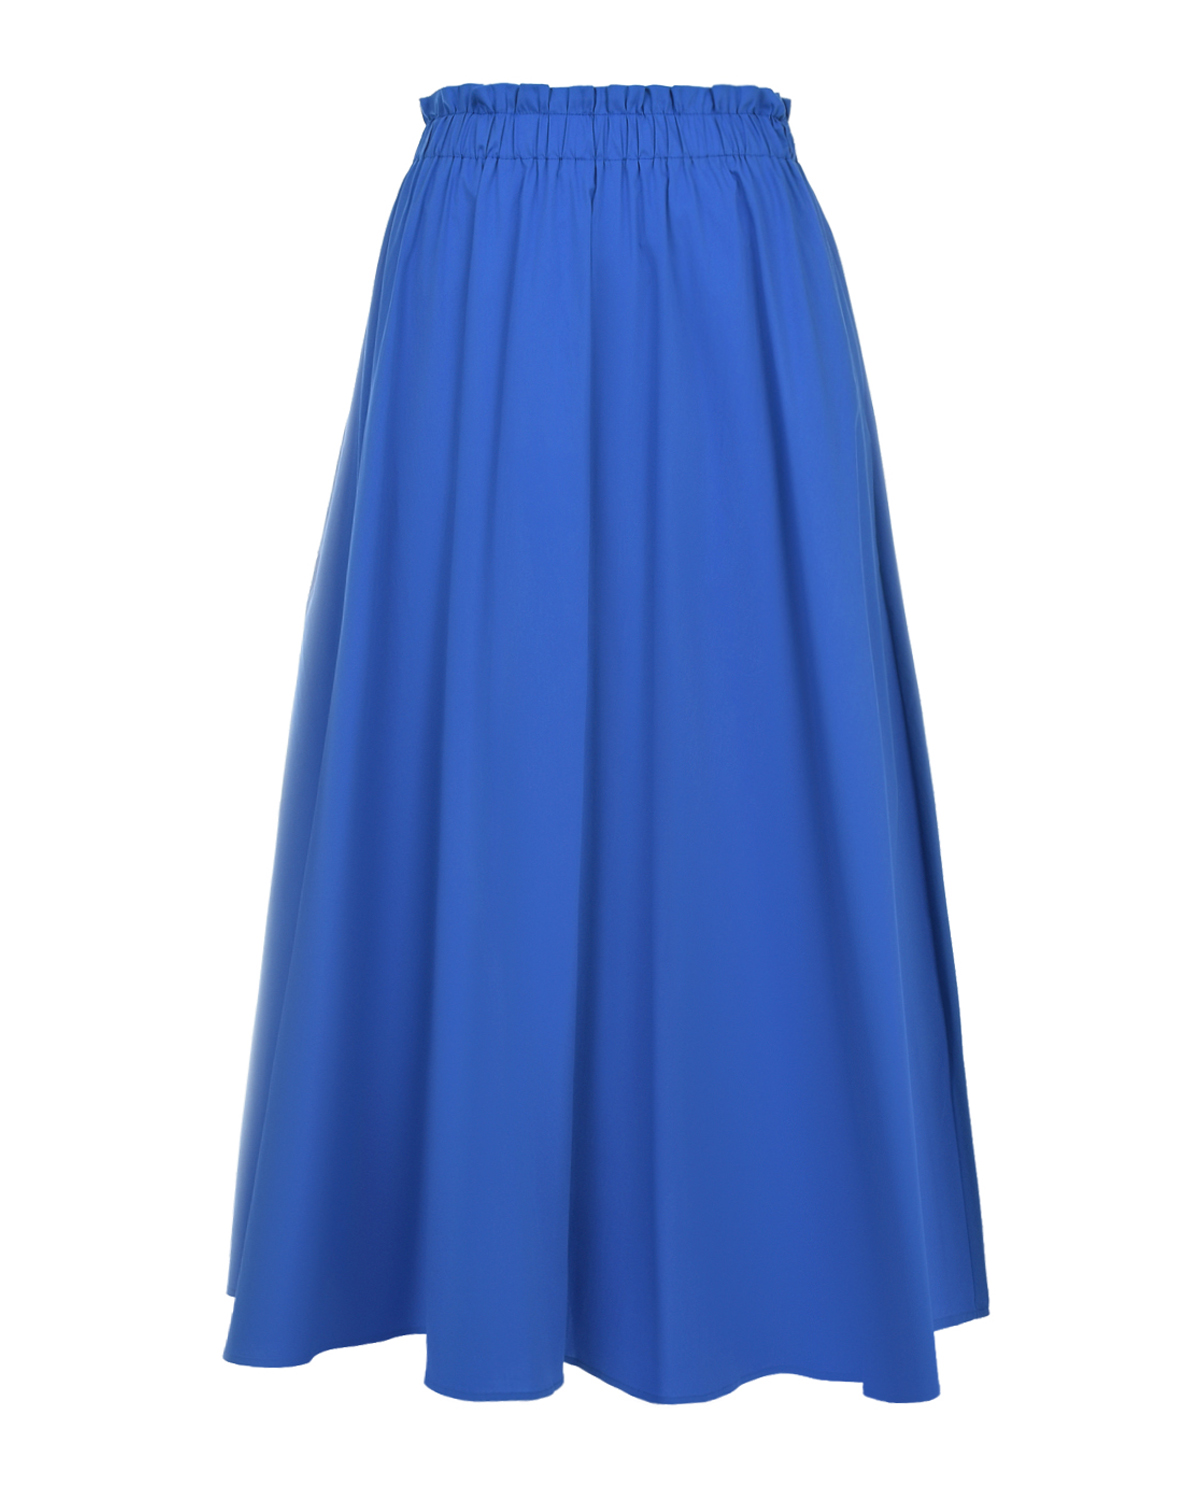 Синяя юбка с поясом на резинке Pietro Brunelli, размер 40, цвет синий - фото 1